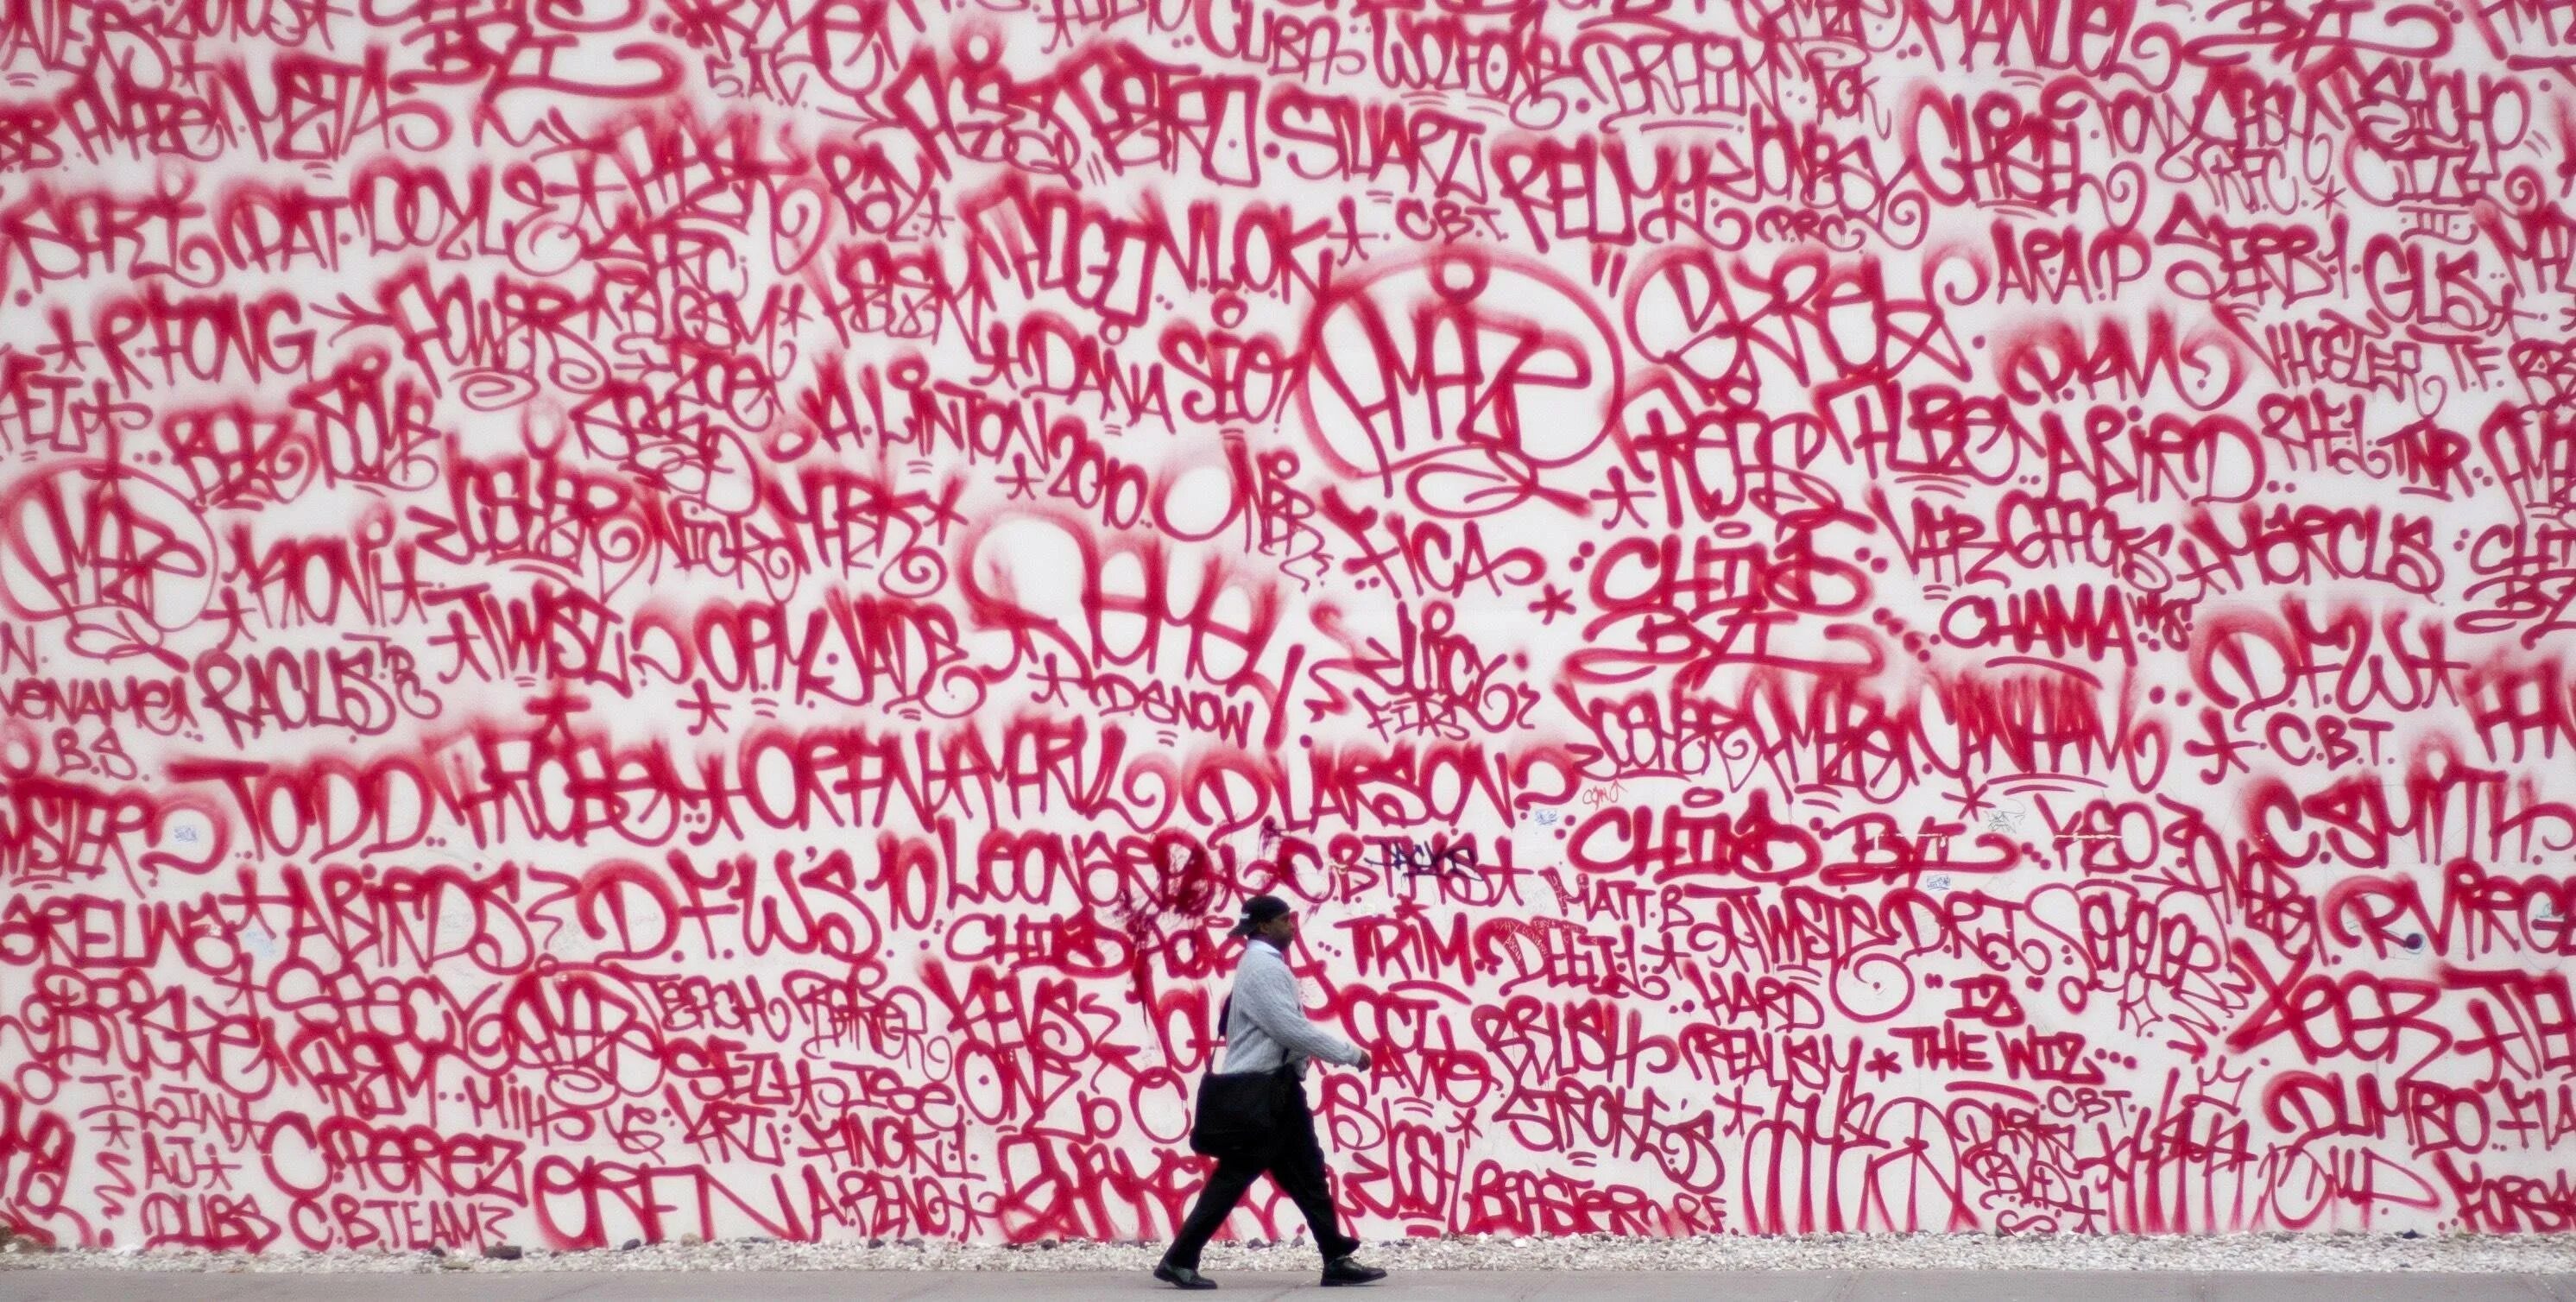 Тэг фон. Теги граффити. Теги на стенах. Теги граффити на стенах. Самые популярные граффити.